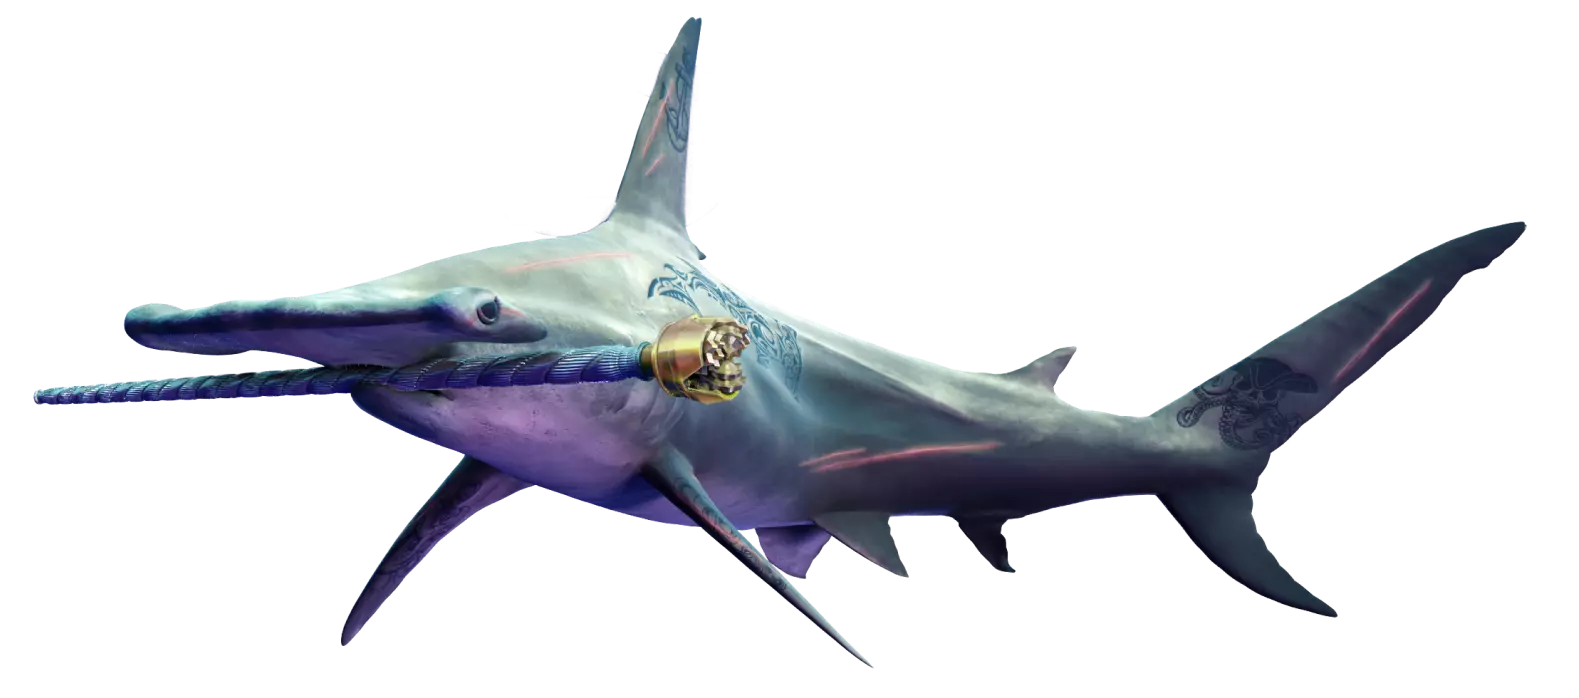 Uma imagem gerada por computador de um tubarão em um fundo branco